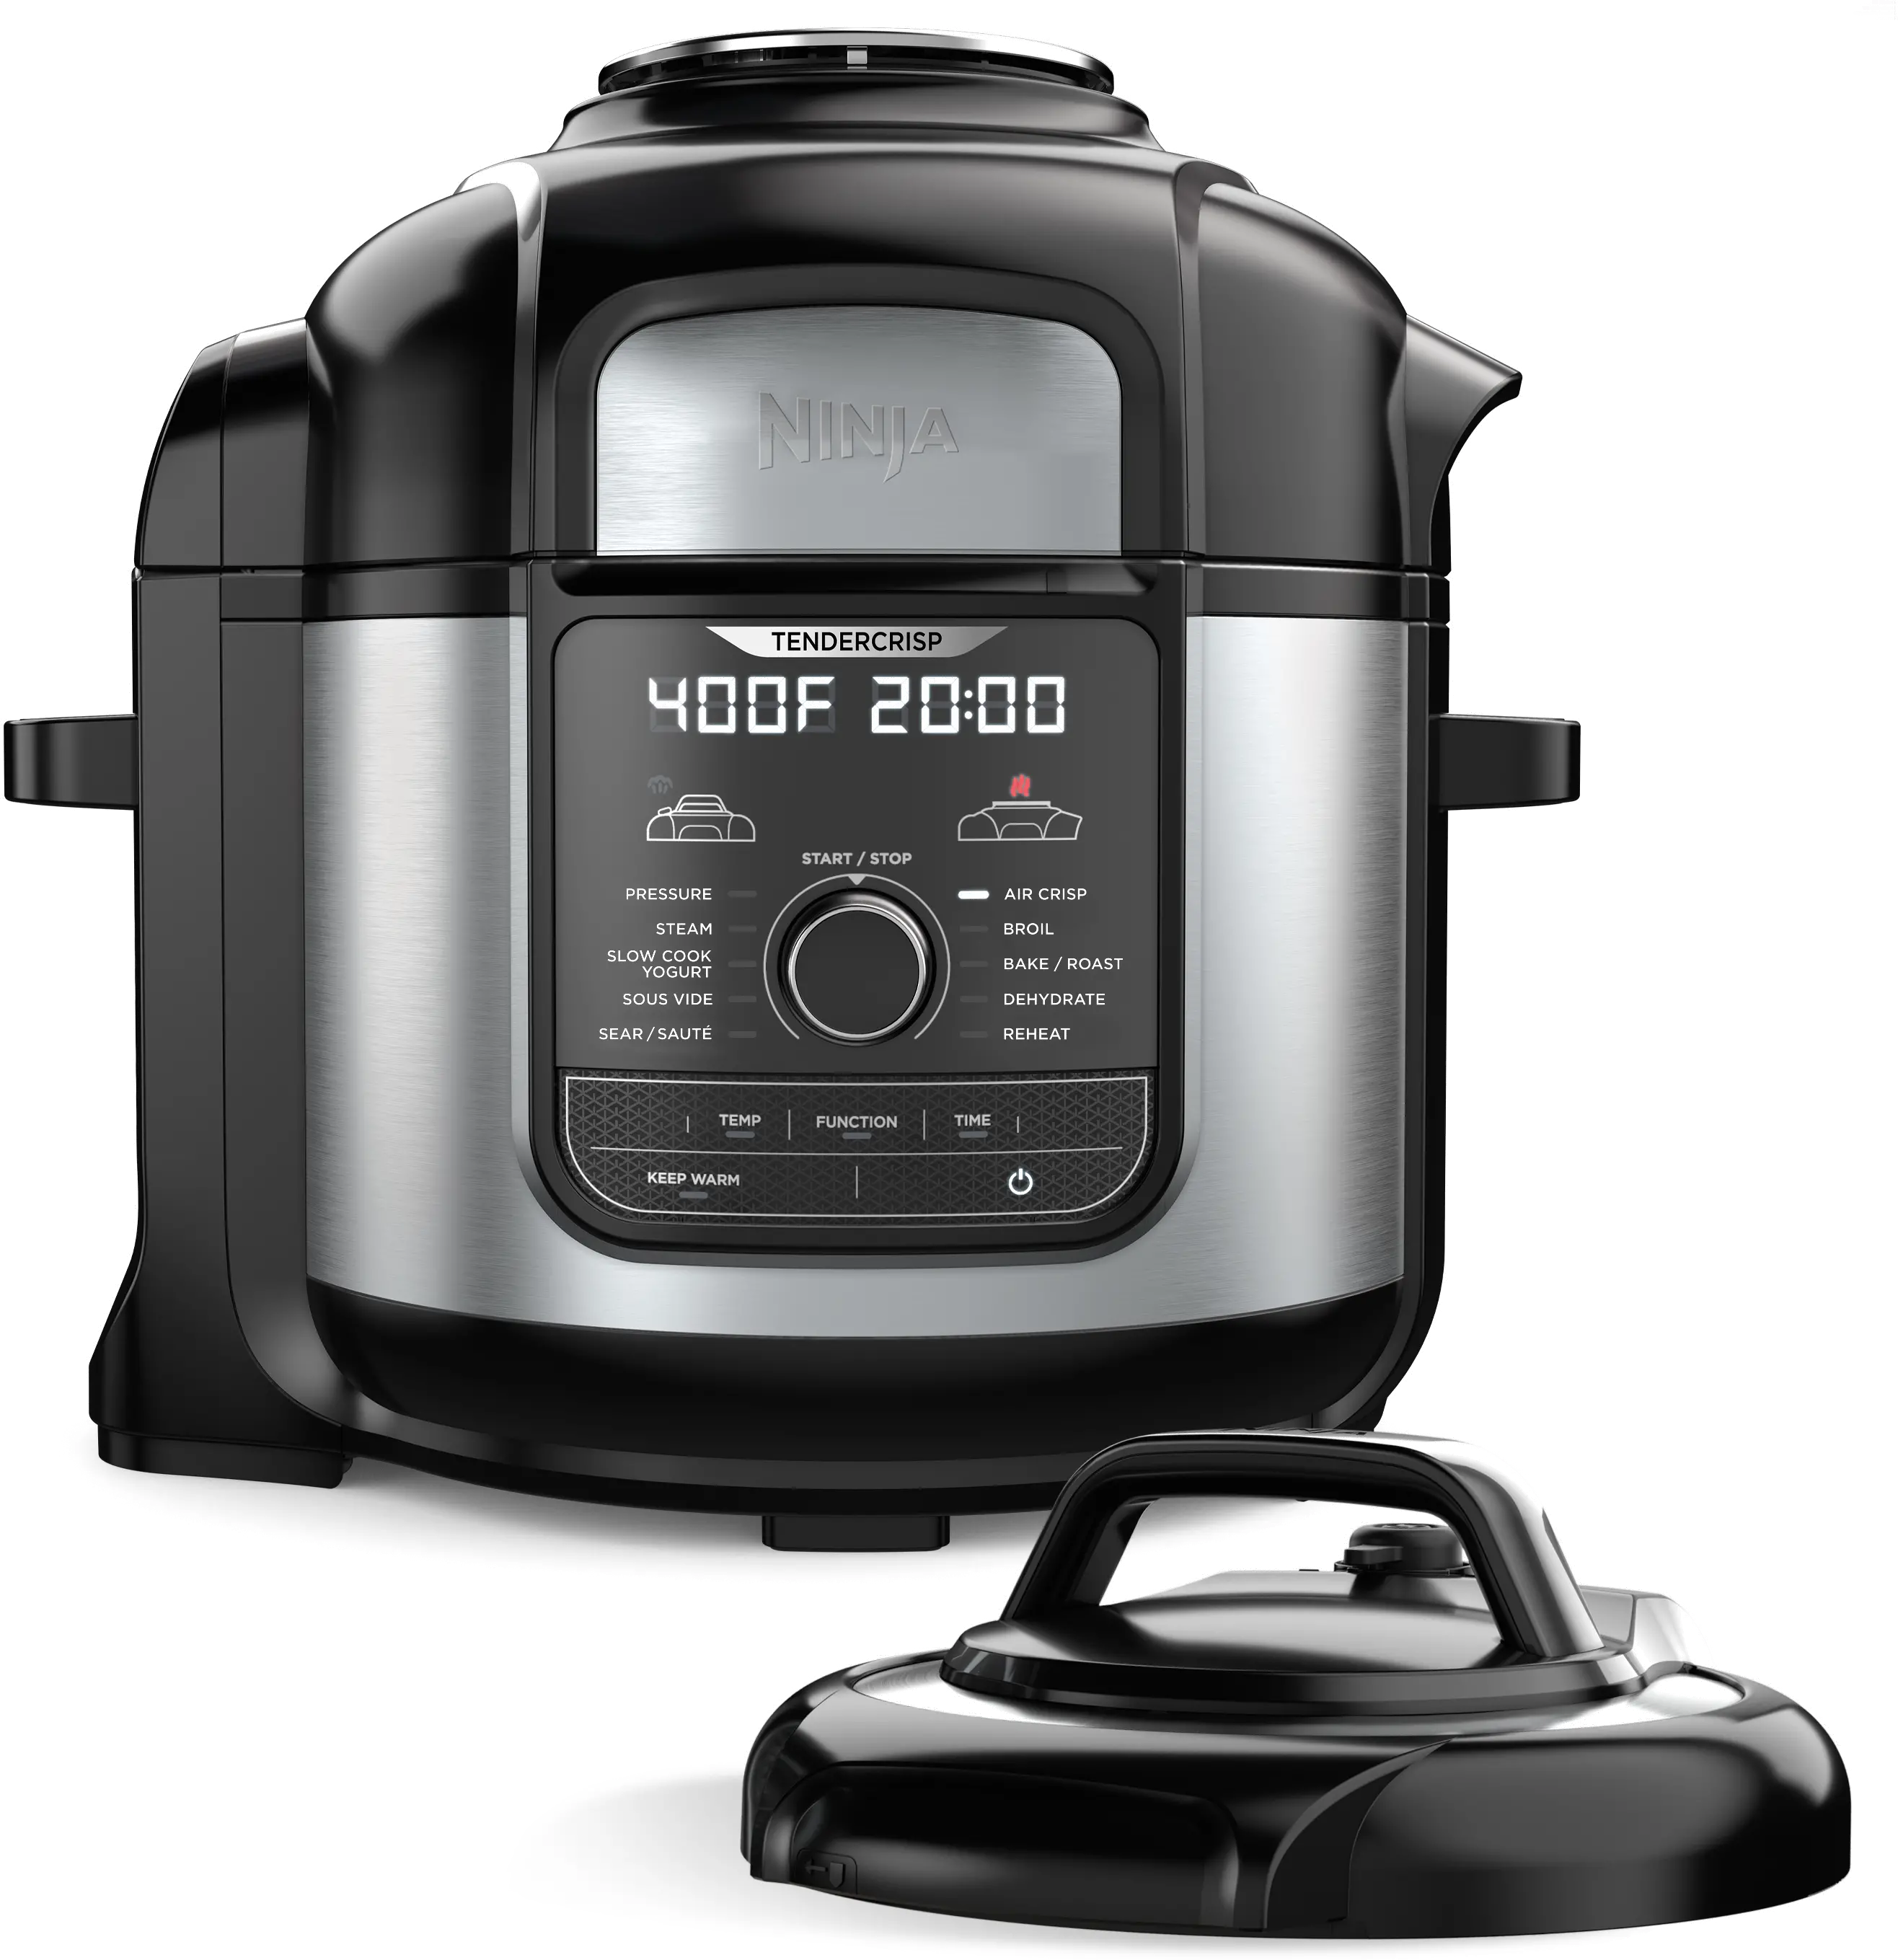 Ninja Foodi 14-in-1 Pressure Cooker Steam Fryer with SmartLid